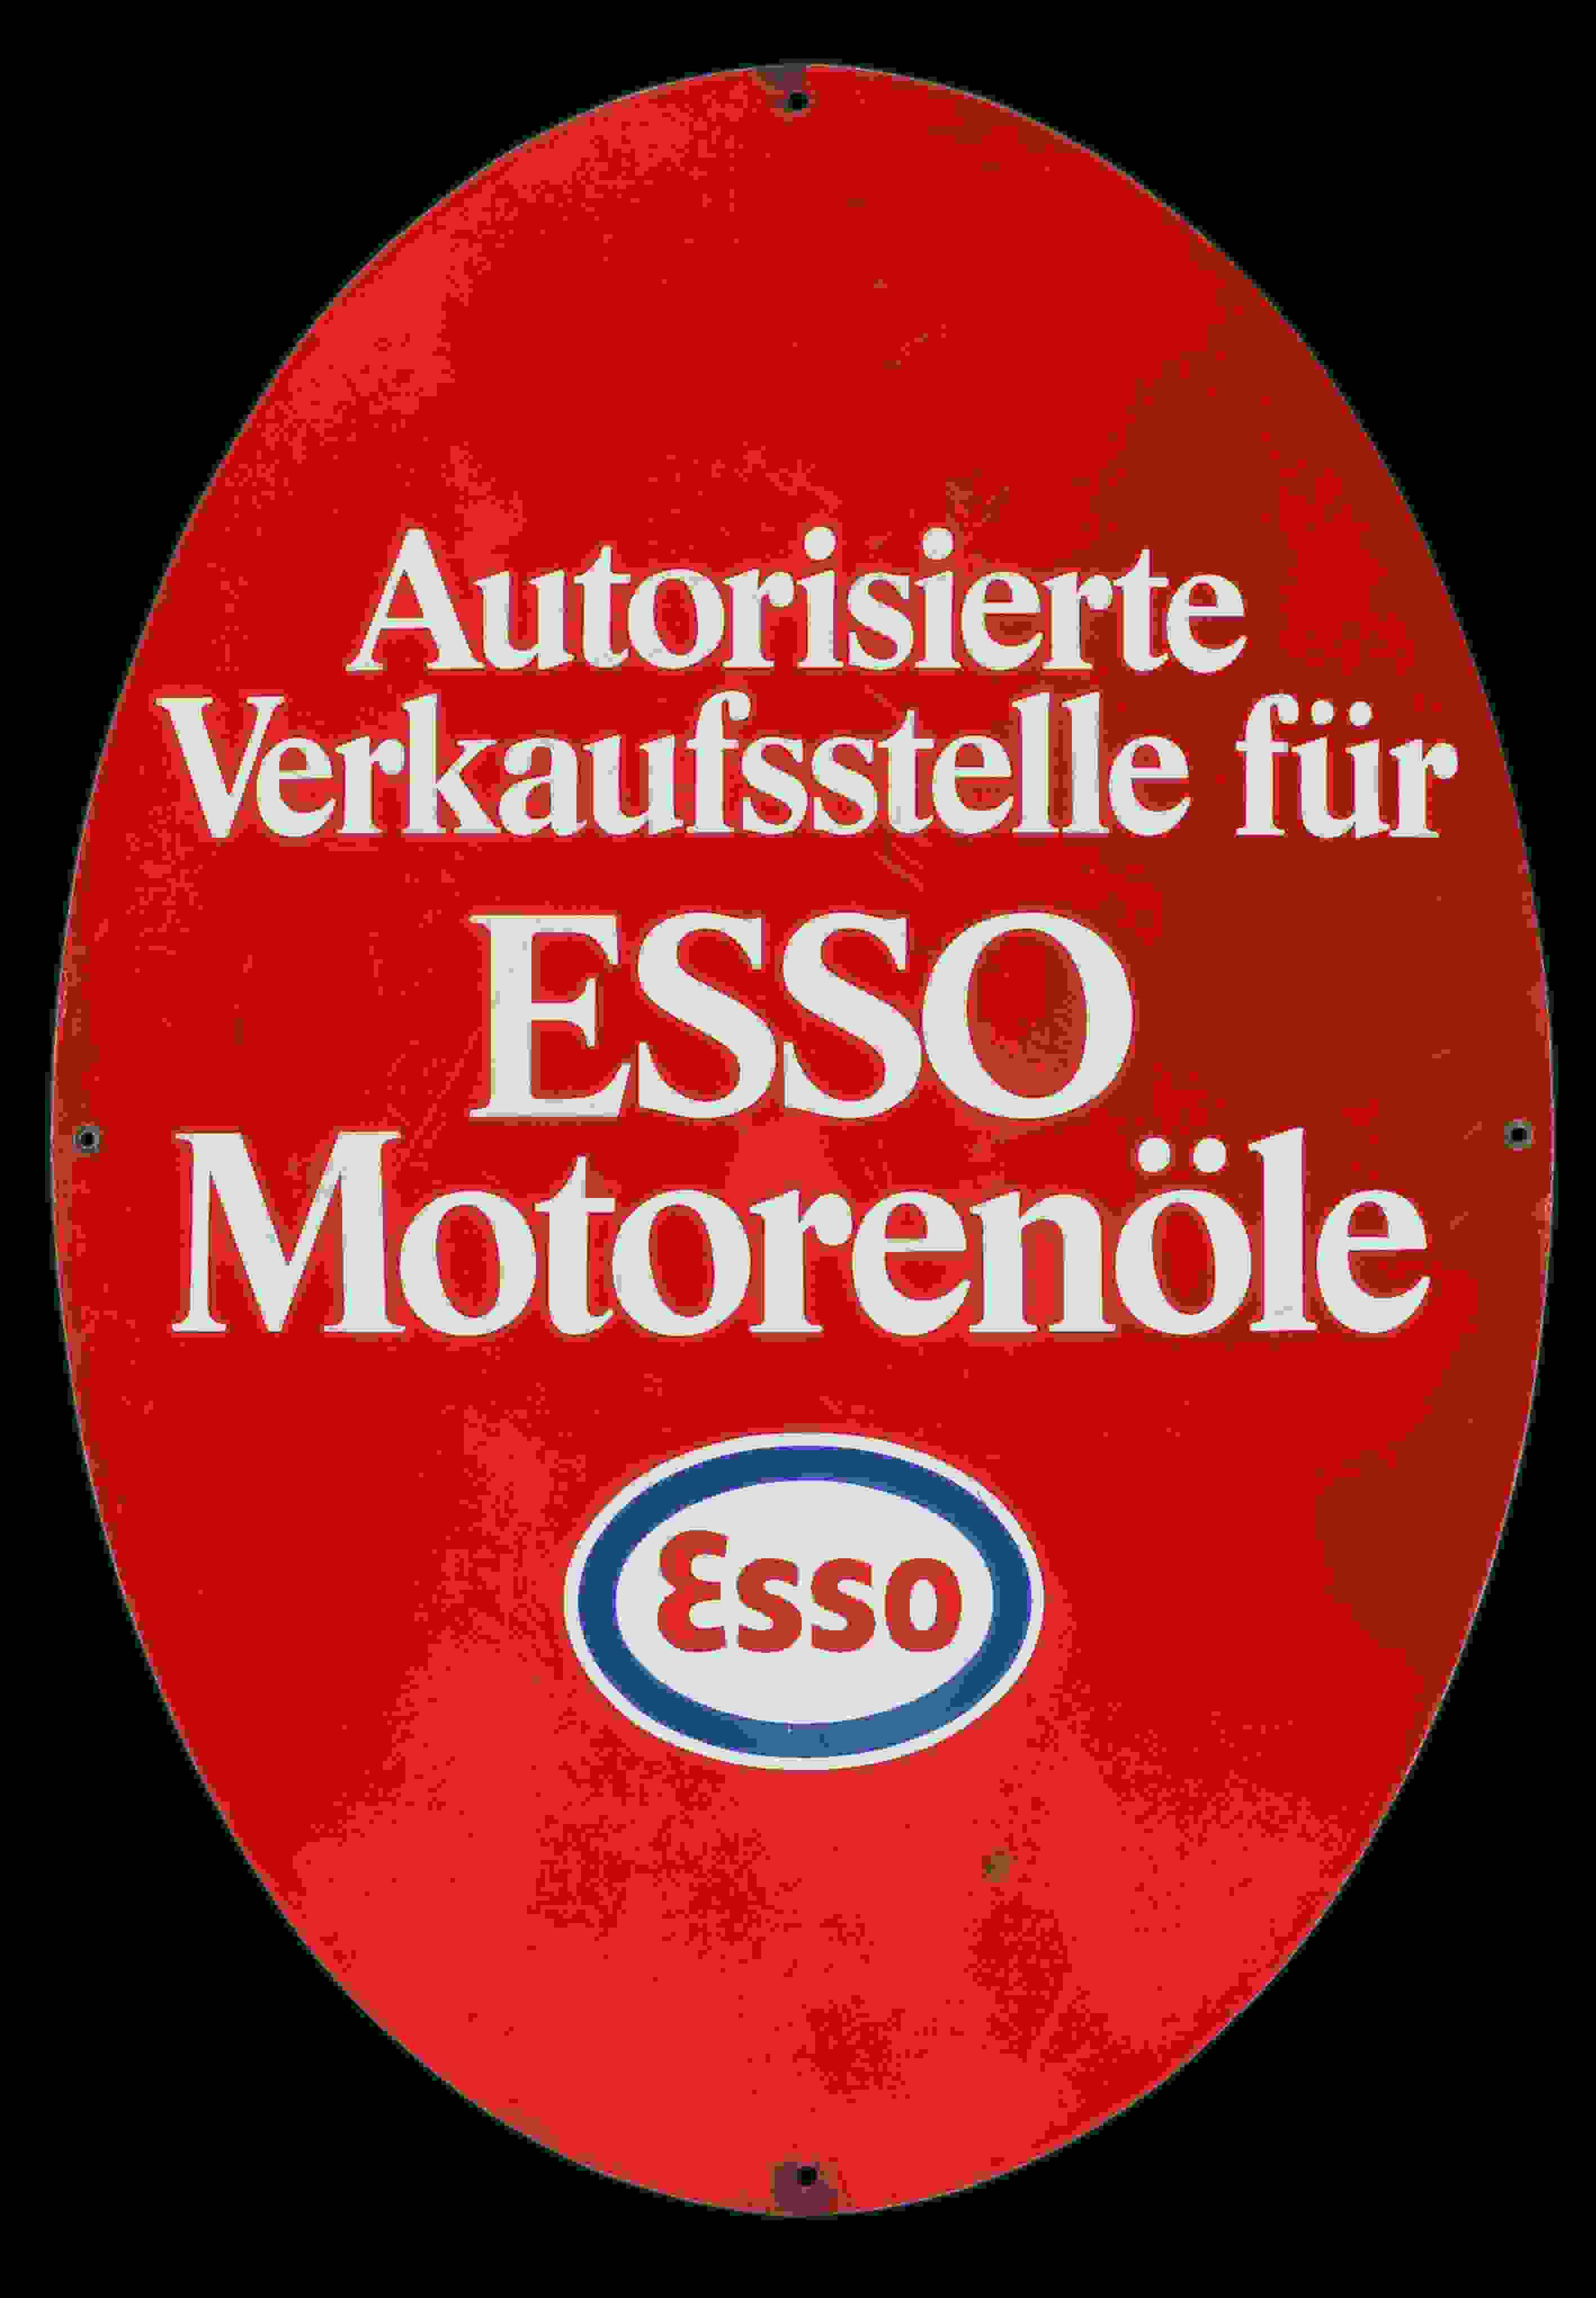 Esso Motorenöle 